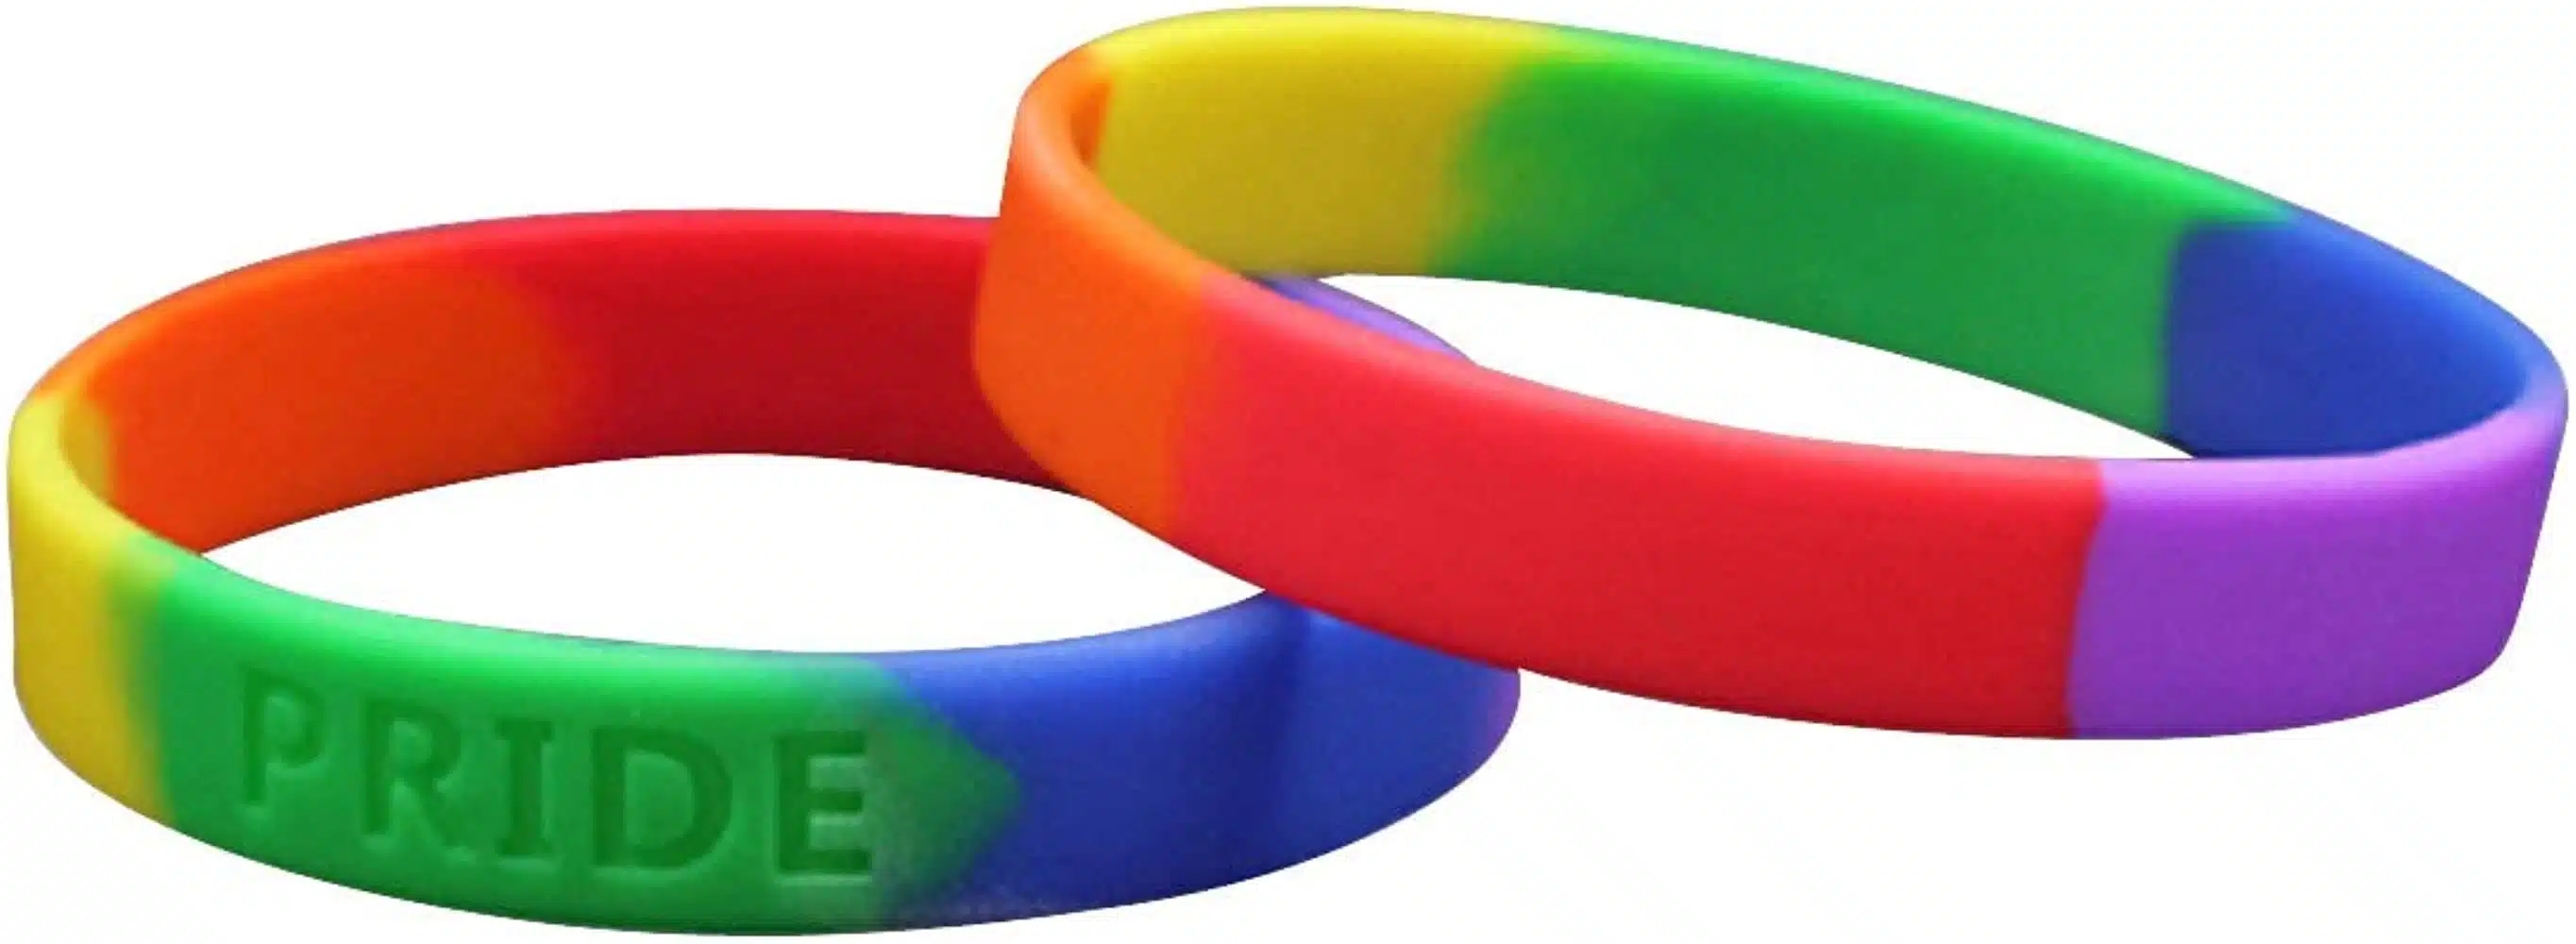 Pride Wristbands